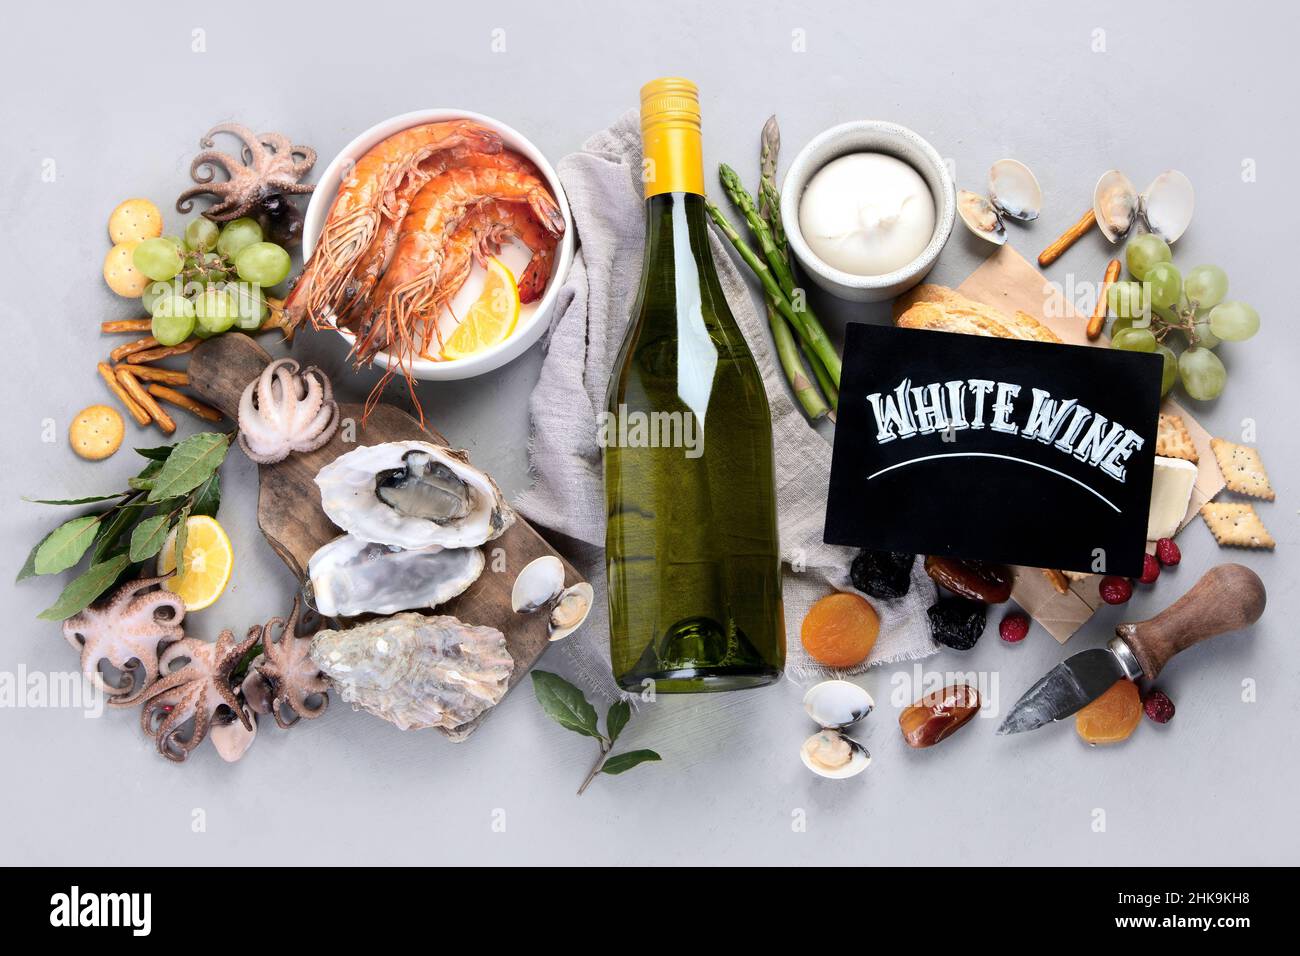 Weißweinflasche auf grauem Hintergrund. Meeresfrüchte und Vorspeisen. Draufsicht, flach liegend Stockfoto